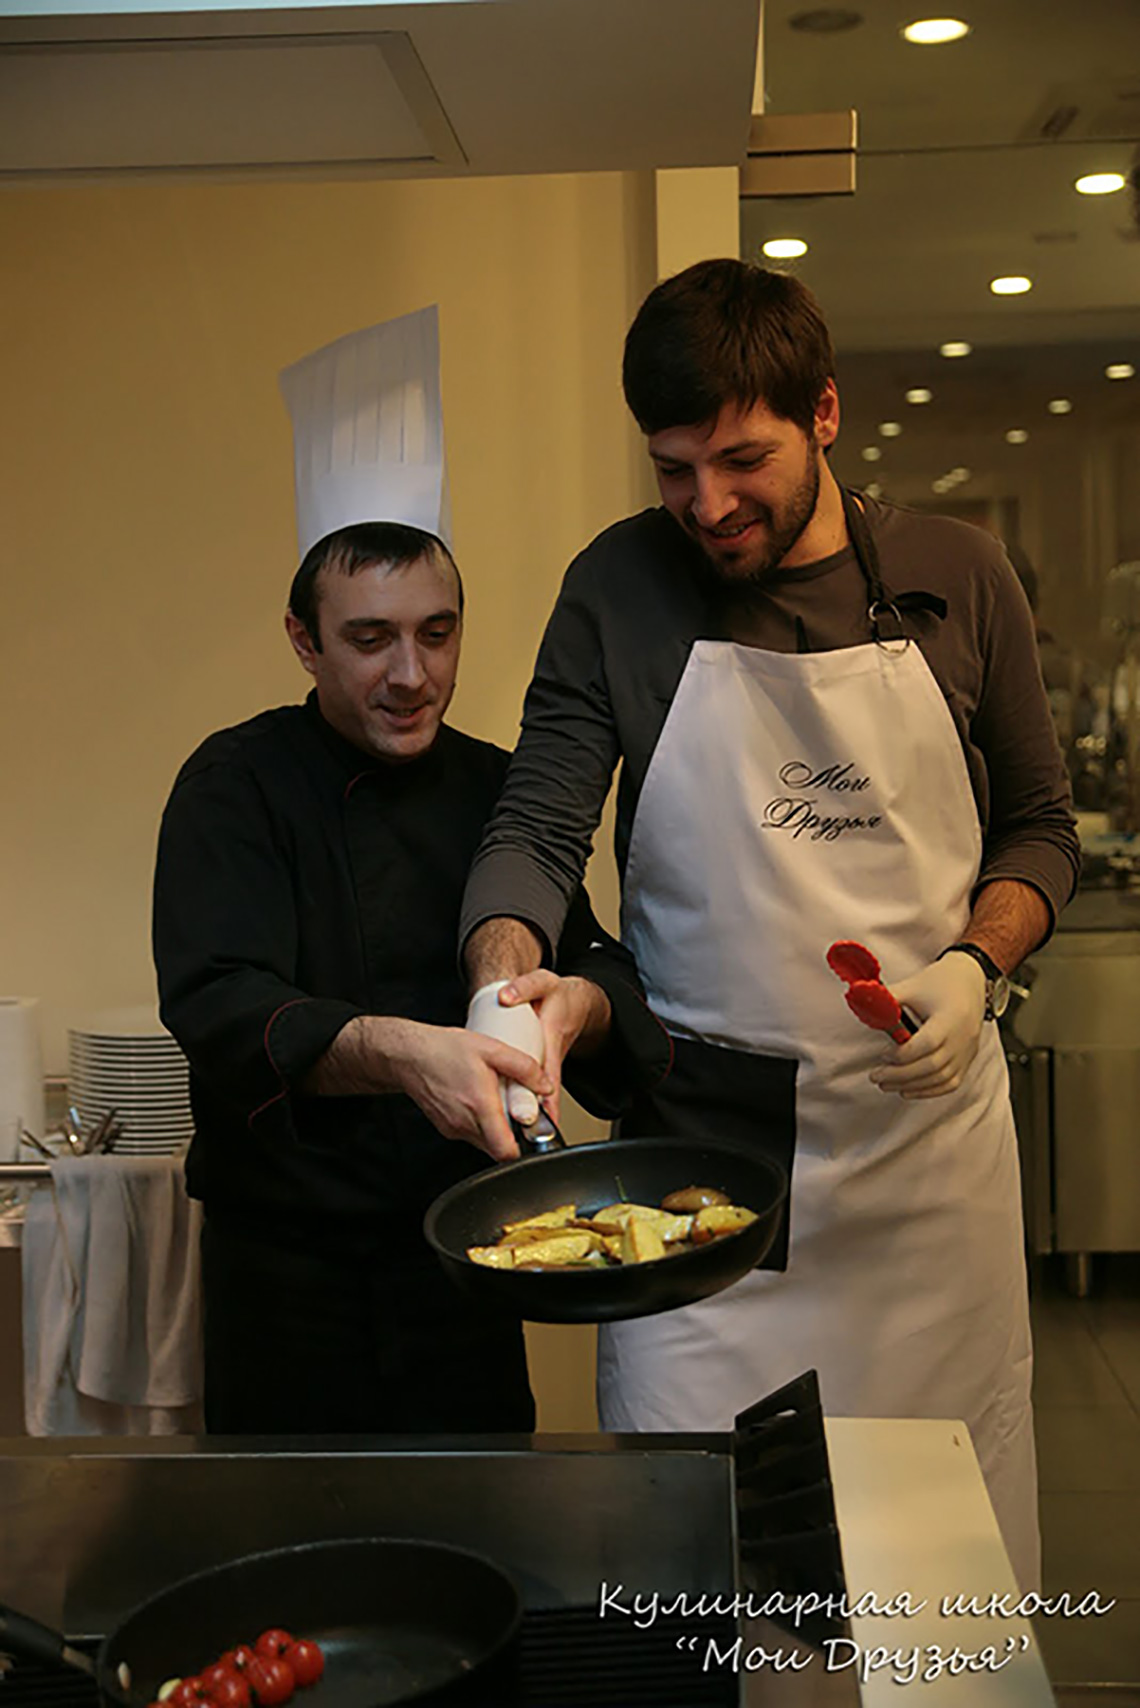 Готовим картофель. Урок тимбилдинга для Sigma Ukraine.